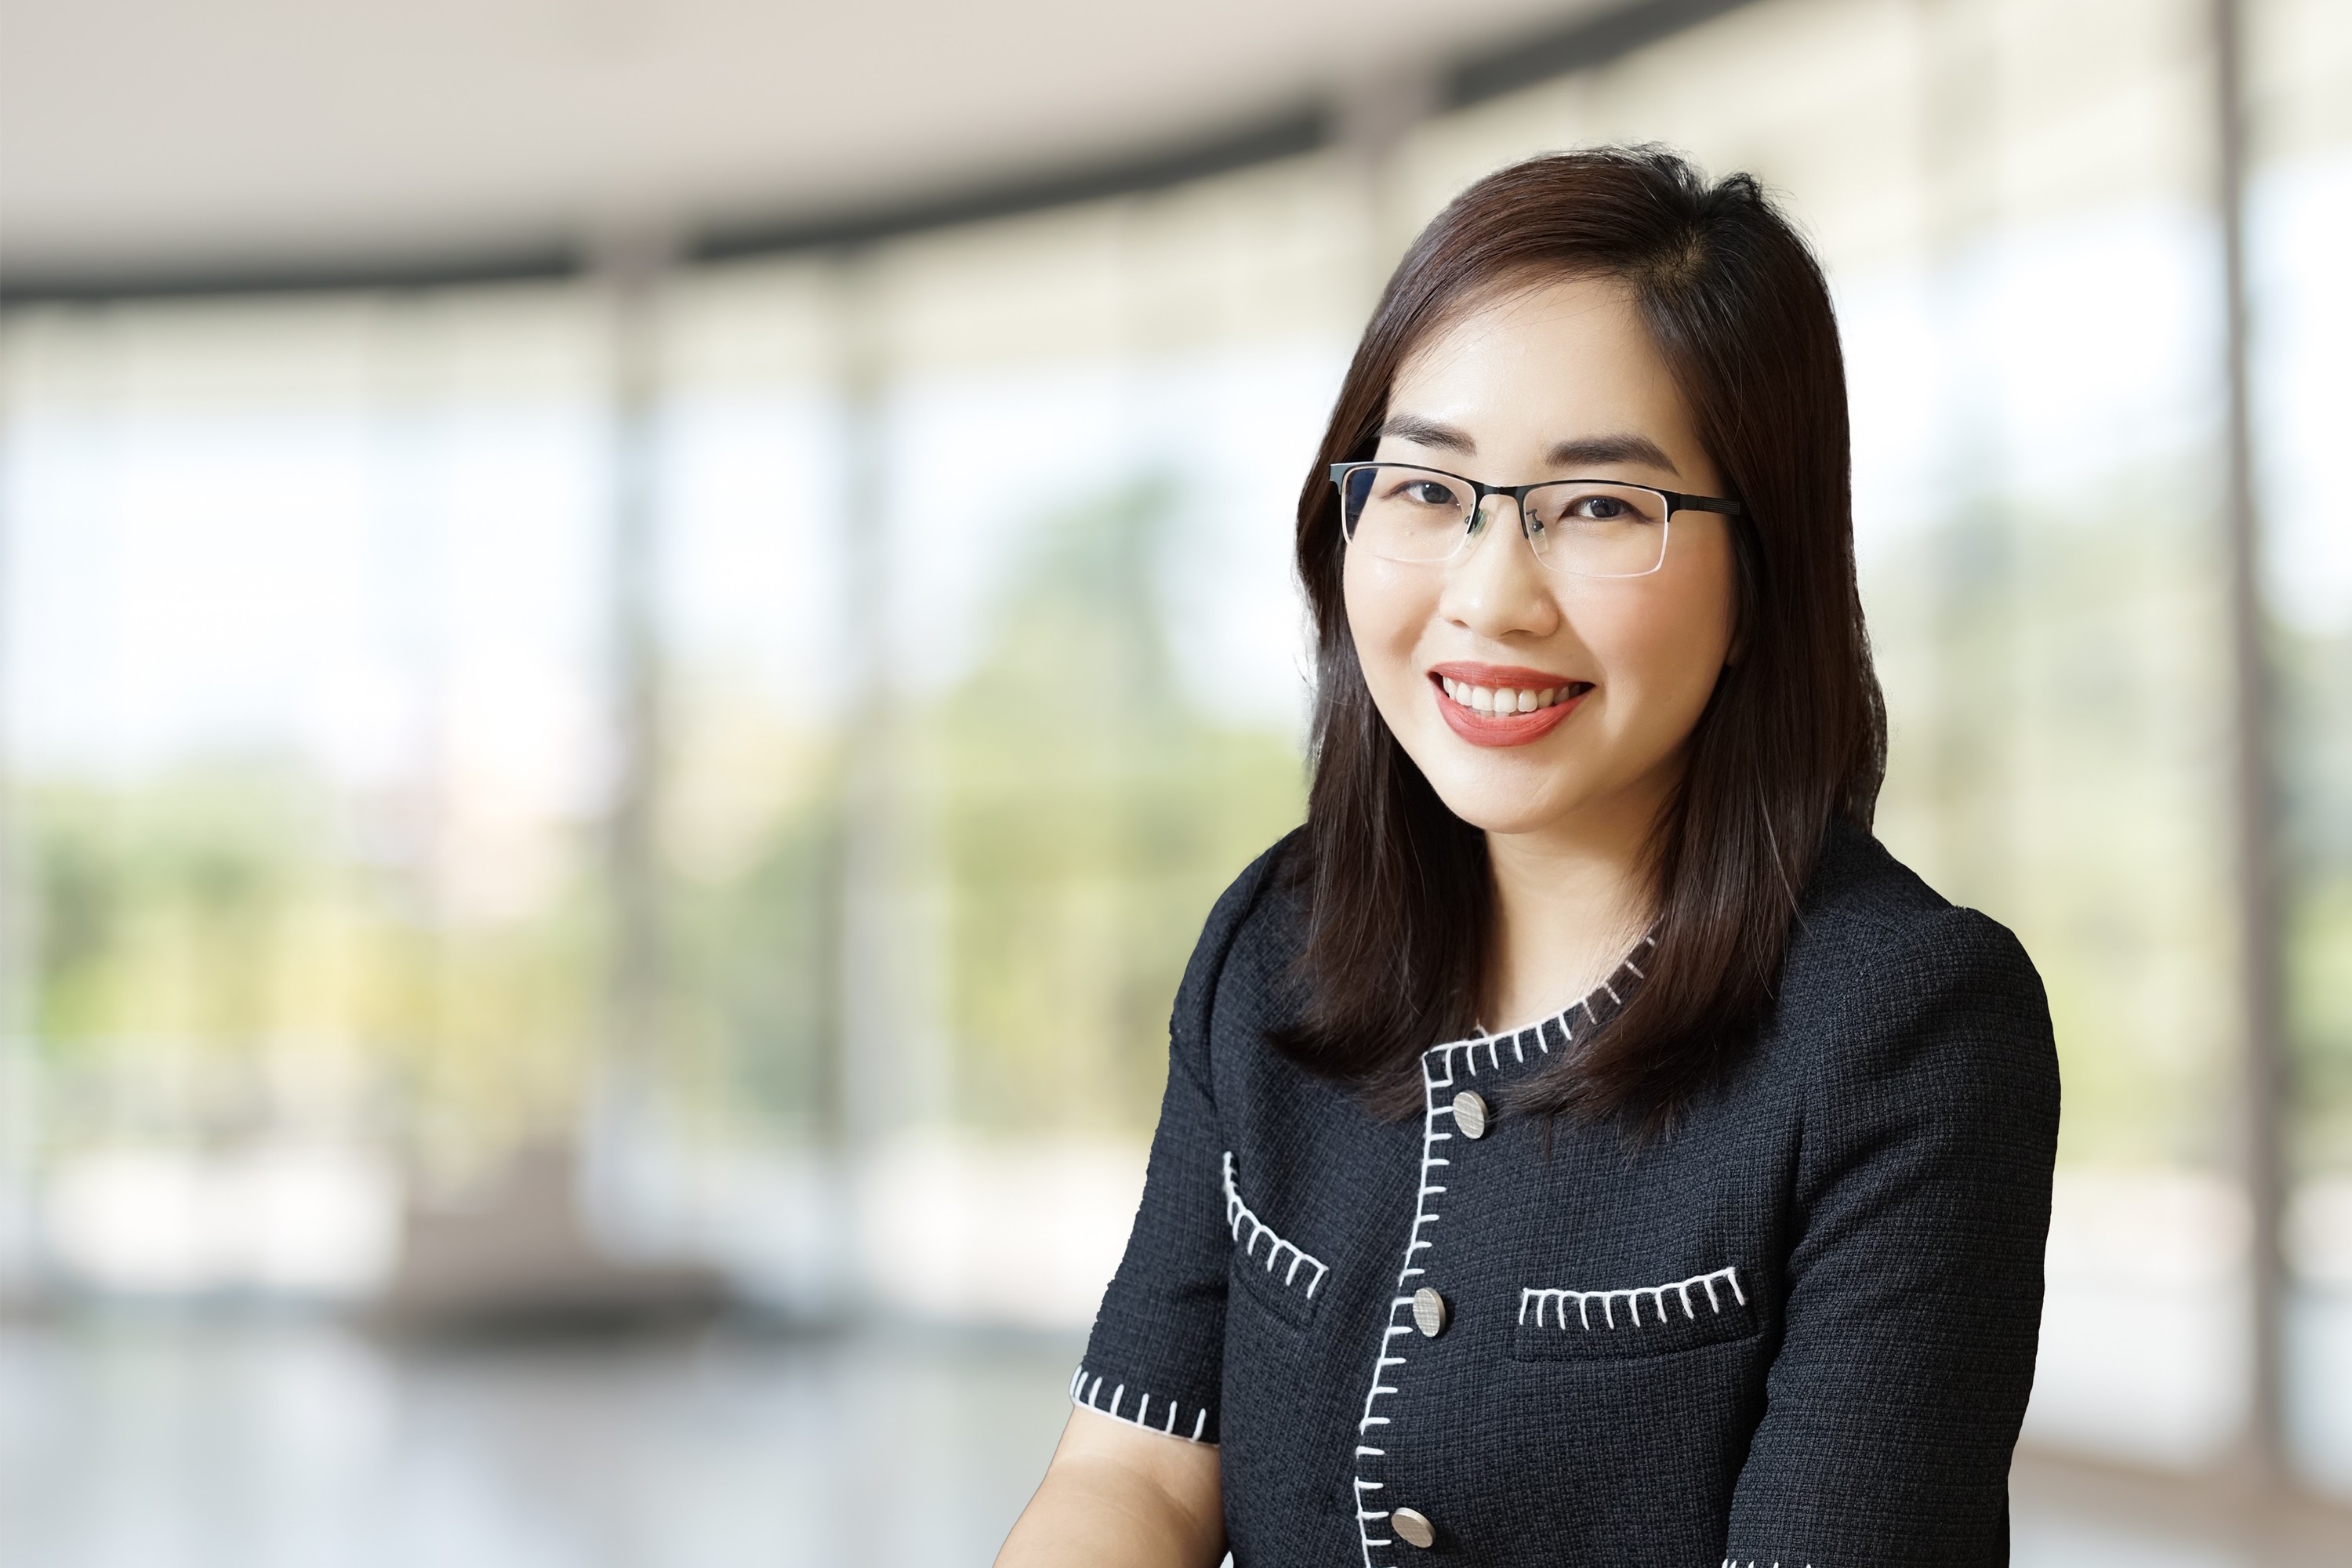 
Bà Uyên Nguyễn – Trưởng bộ phận Tư vấn, Savills Hotels APAC (Ảnh nhân vật cung cấp).
